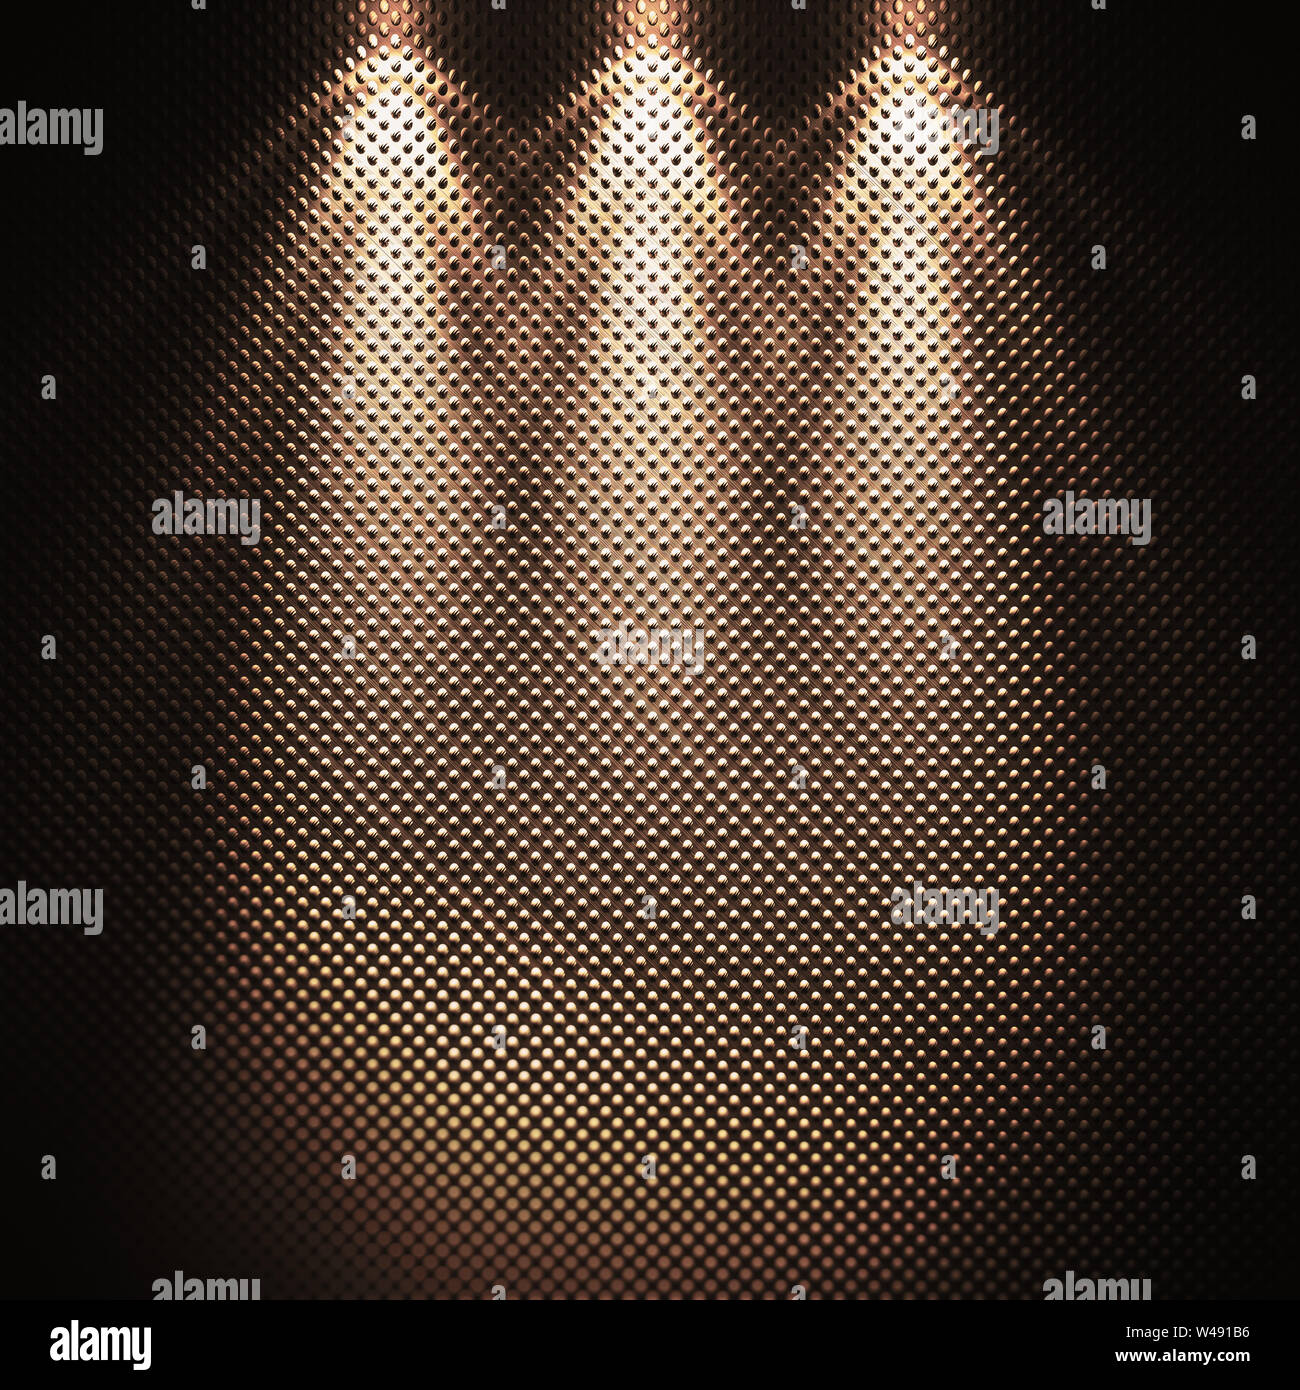 Lumières photométriques sur place. Metal surface texturée Banque D'Images